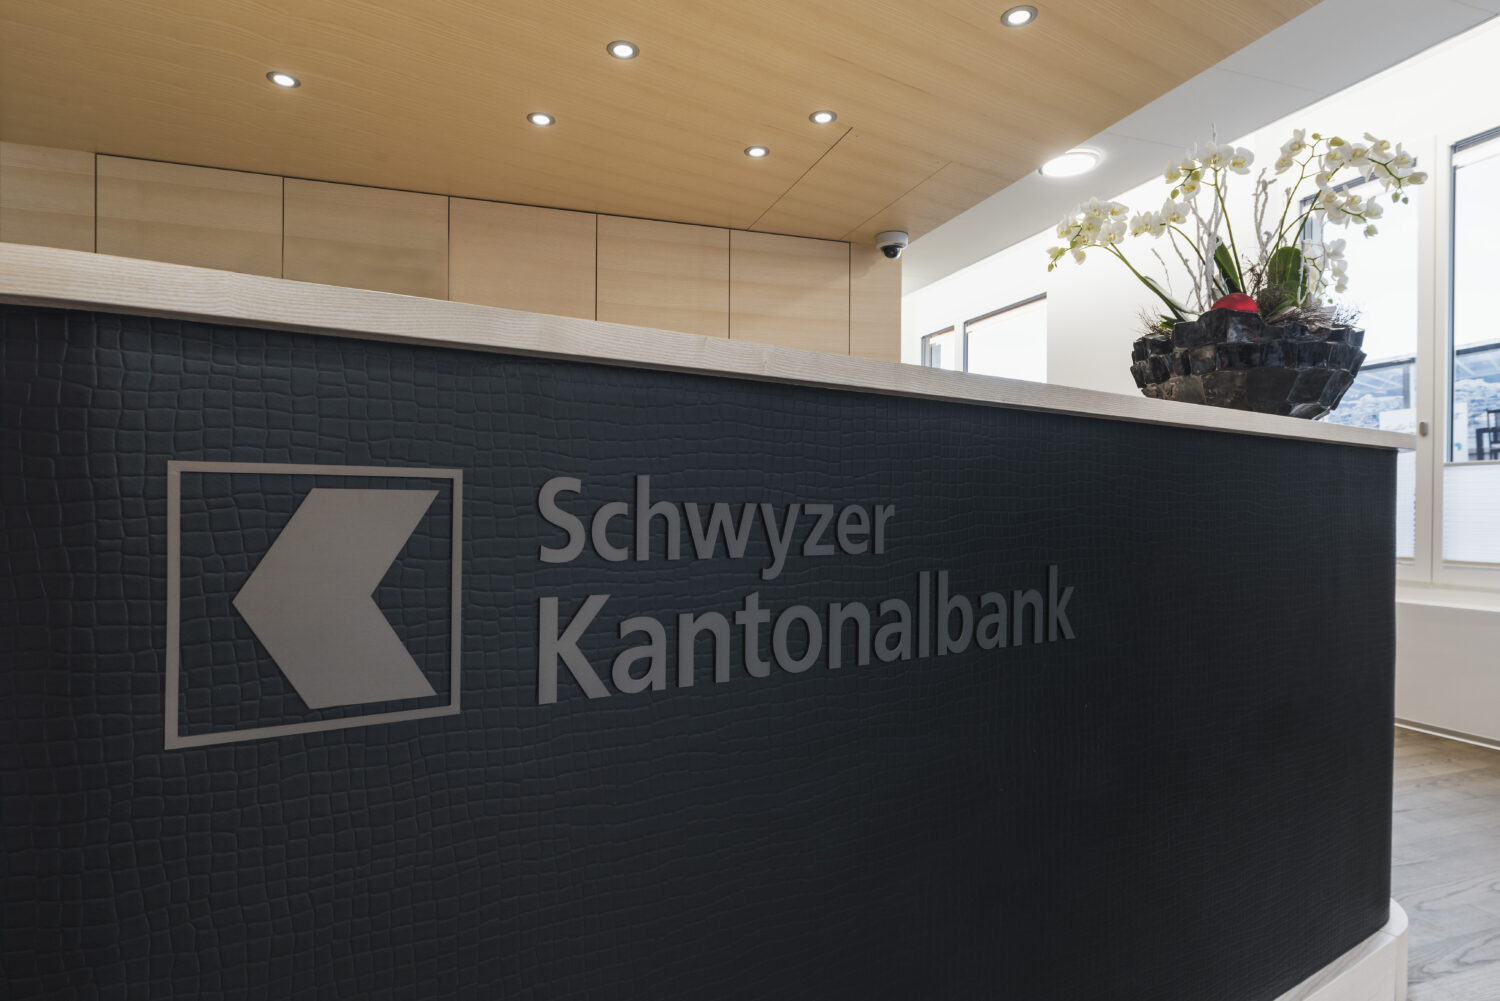 Schwyzer Kantonalbank Altendorf, Schalter mit Logo, marty architektur